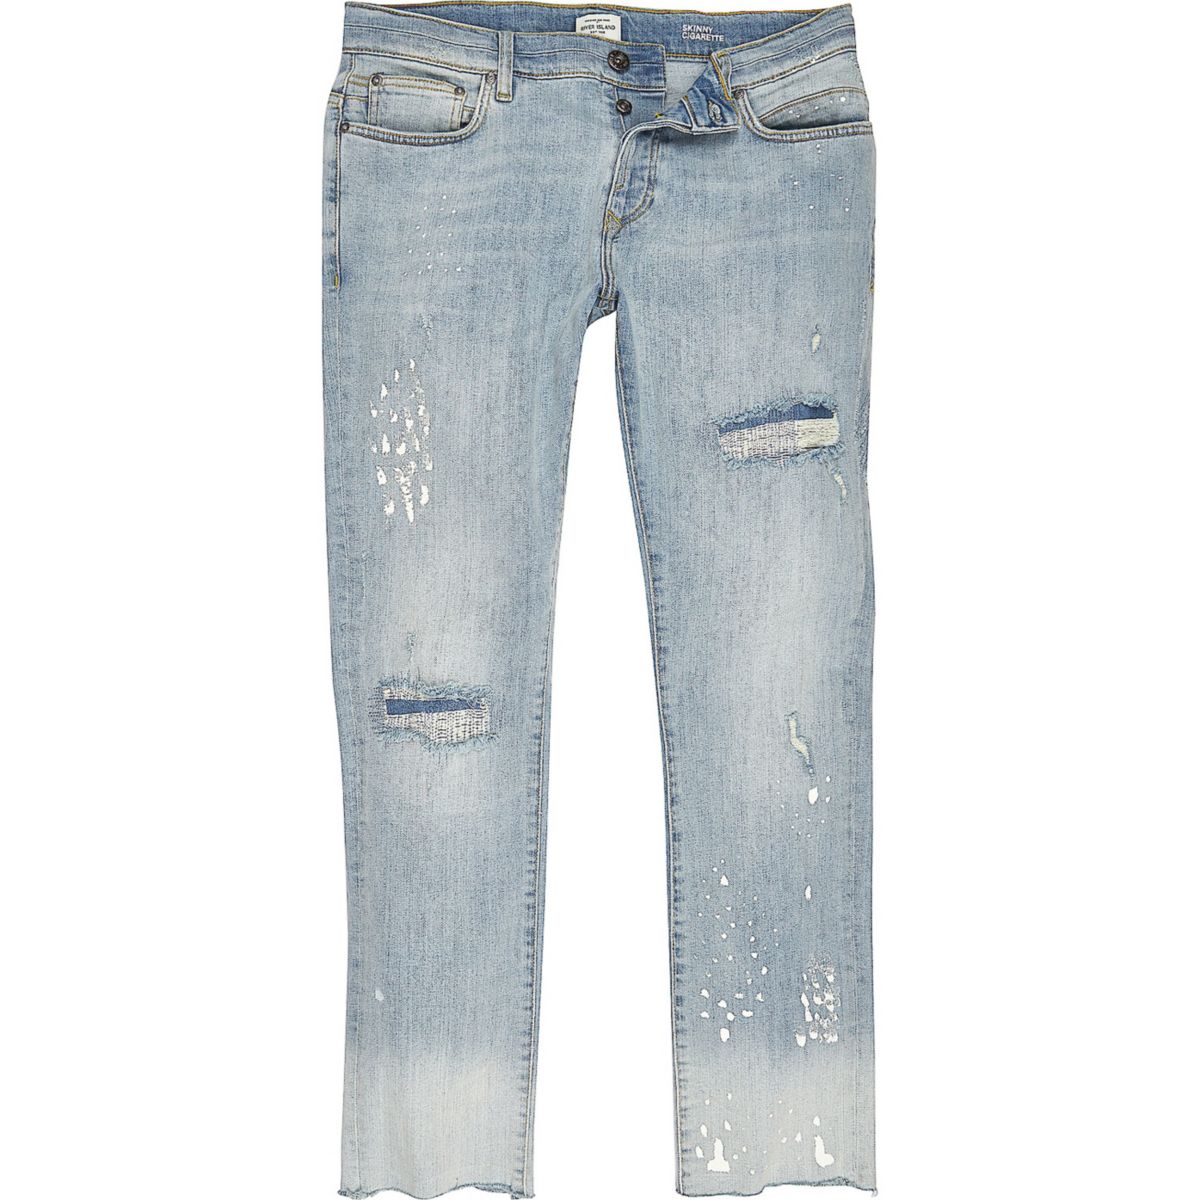 Light blue skinny bleach jeans - Jeans - Sale - men